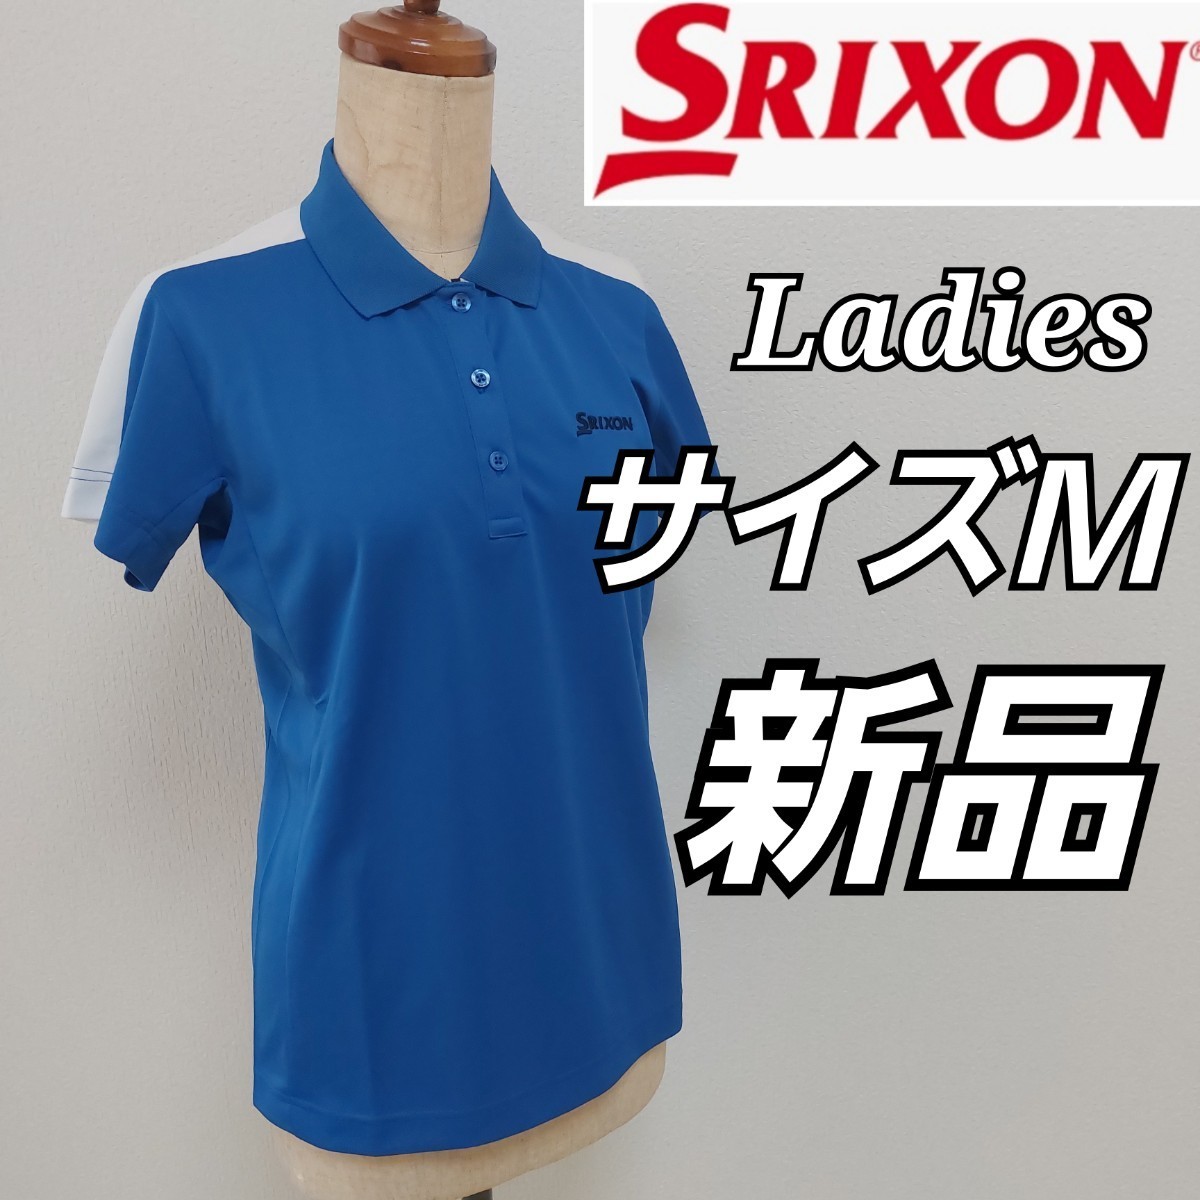 スリクソン SRIXON レディース テニス ウェア ポロシャツ ゲームシャツ ユニホーム 練習着 半袖 SDP1830W WHT